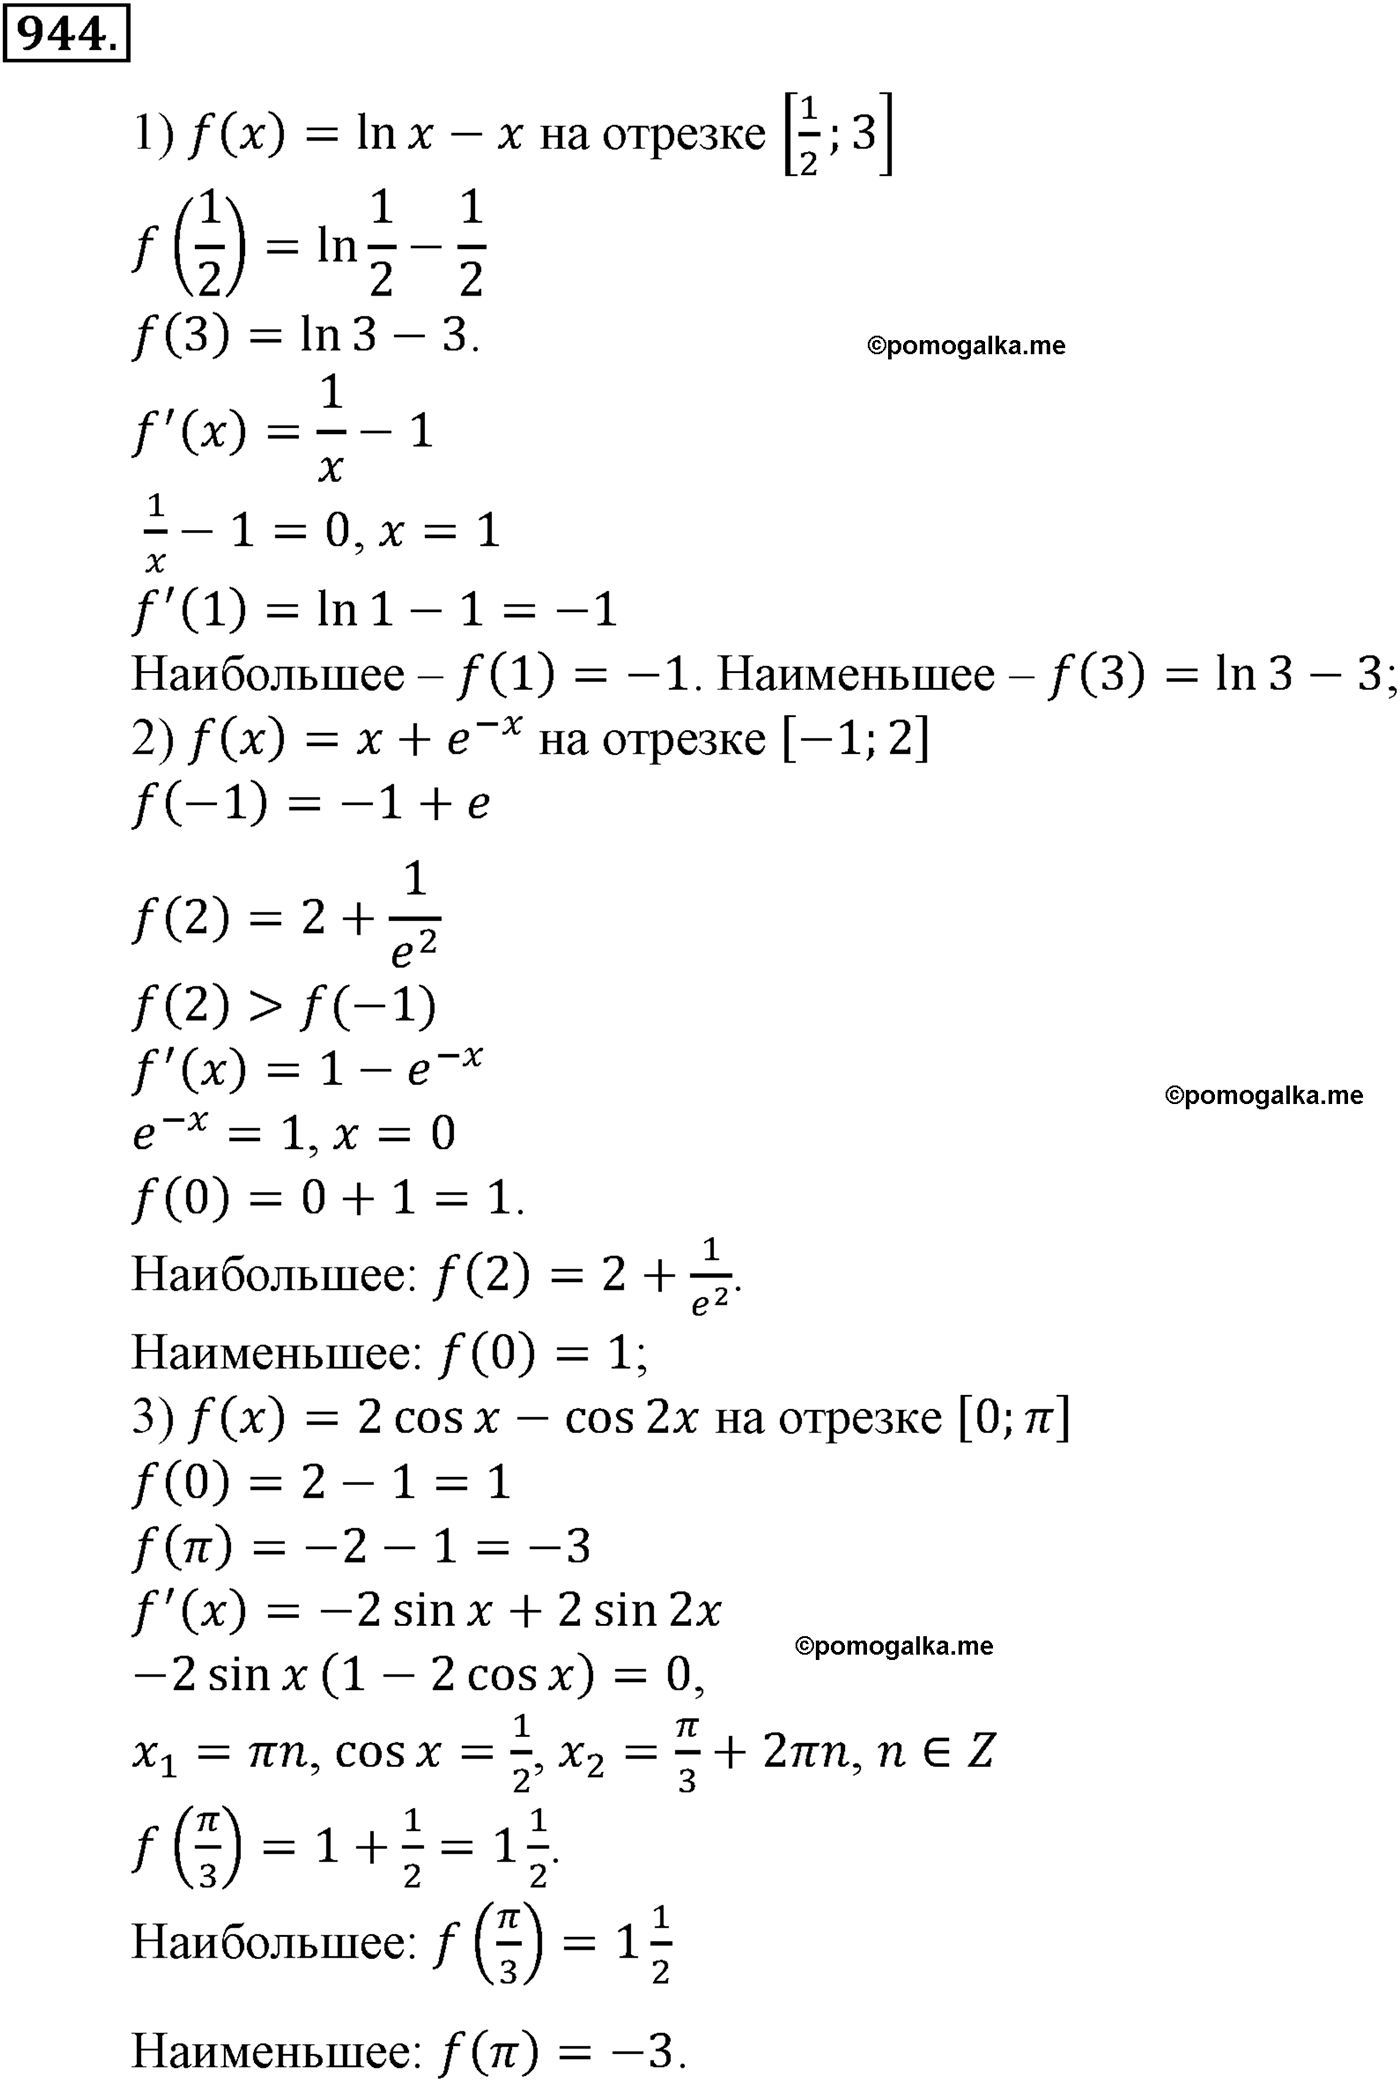 разбор задачи №944 по алгебре за 10-11 класс из учебника Алимова, Колягина